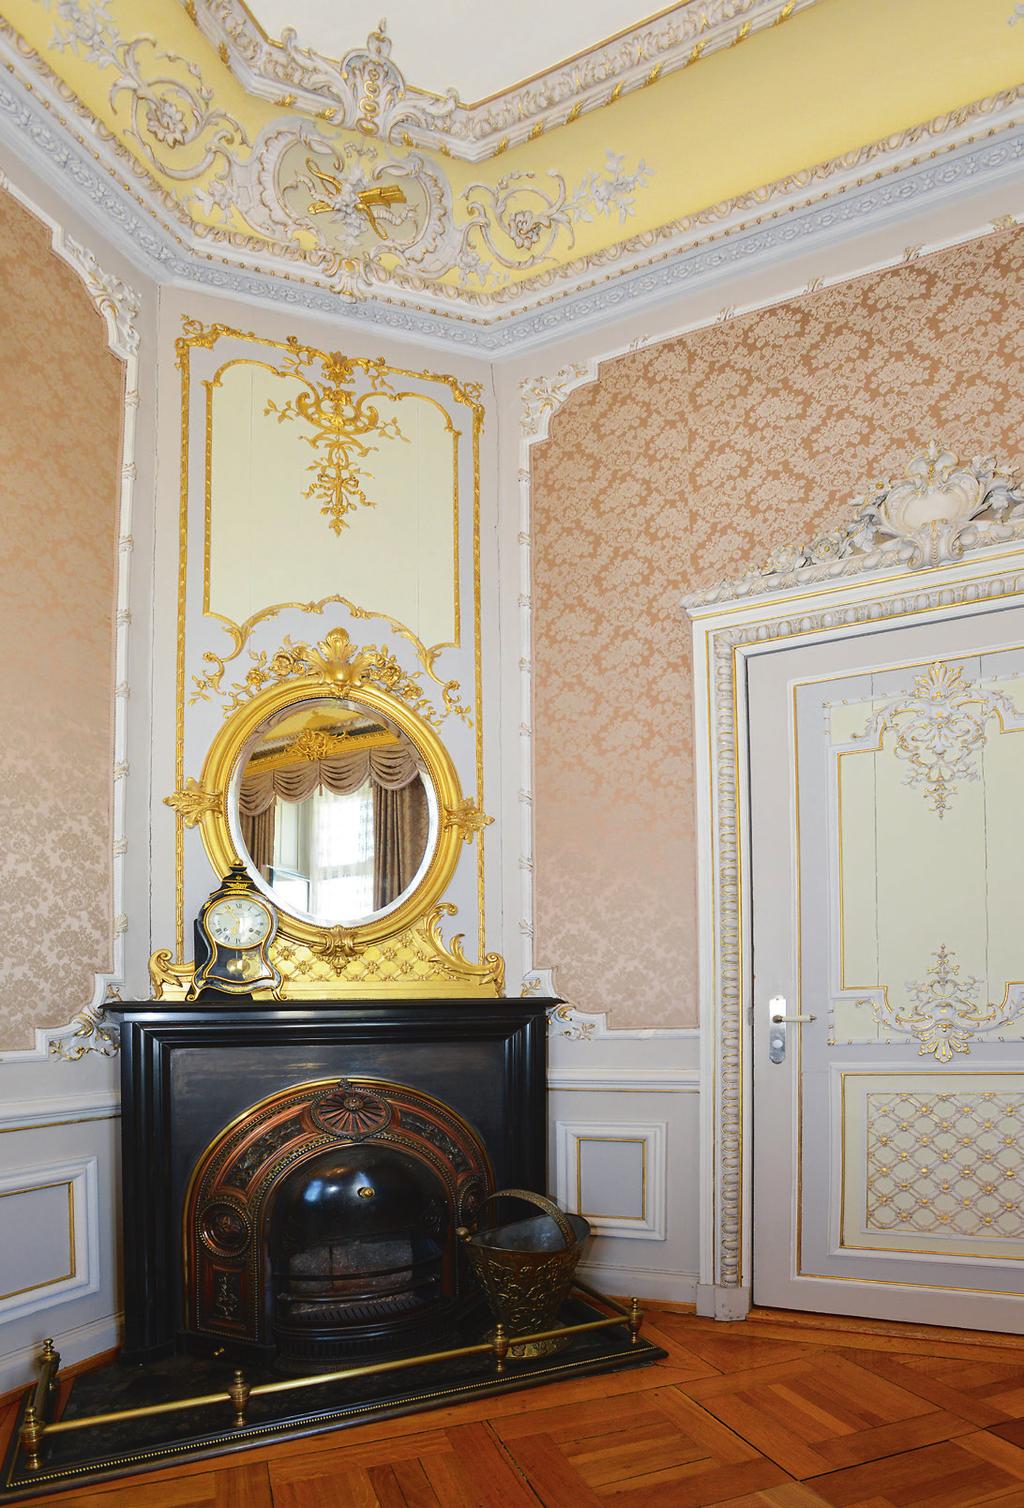 Oberer Graben Die Villa ist mit Komfort und Luxus ausgestattet. Dieser prachtvolle Ofen gehört ebenfalls zum bestehenden Interieur wie auch die luxuriösen Türen, Tapeten und Stuckaturen.